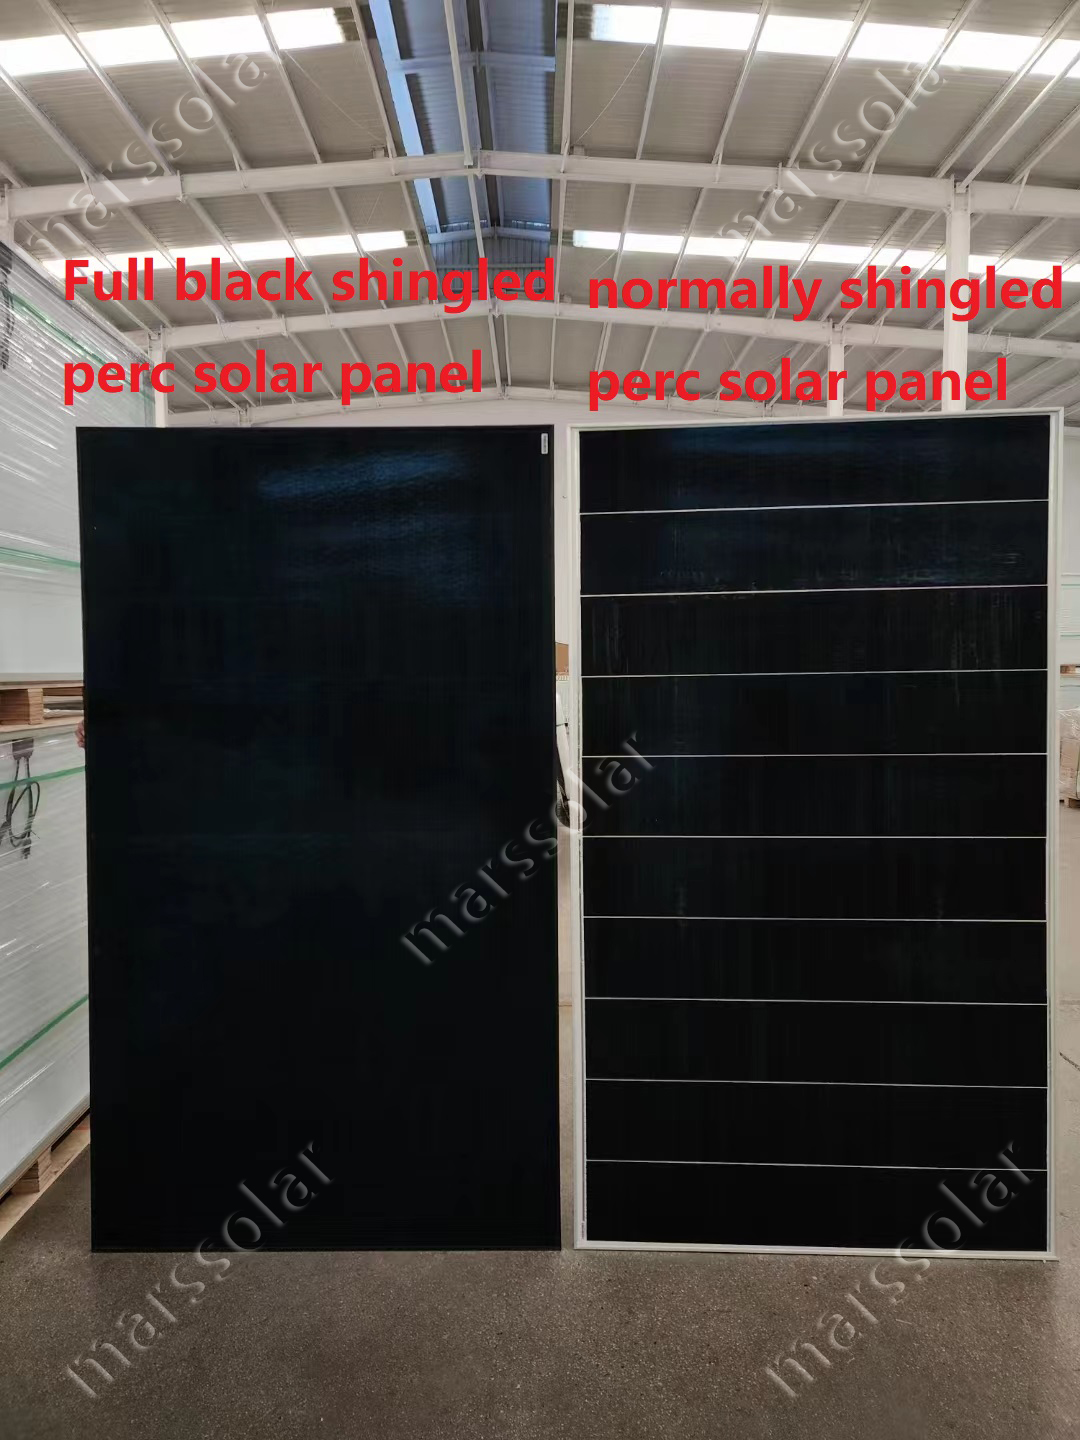 full black solar panel 